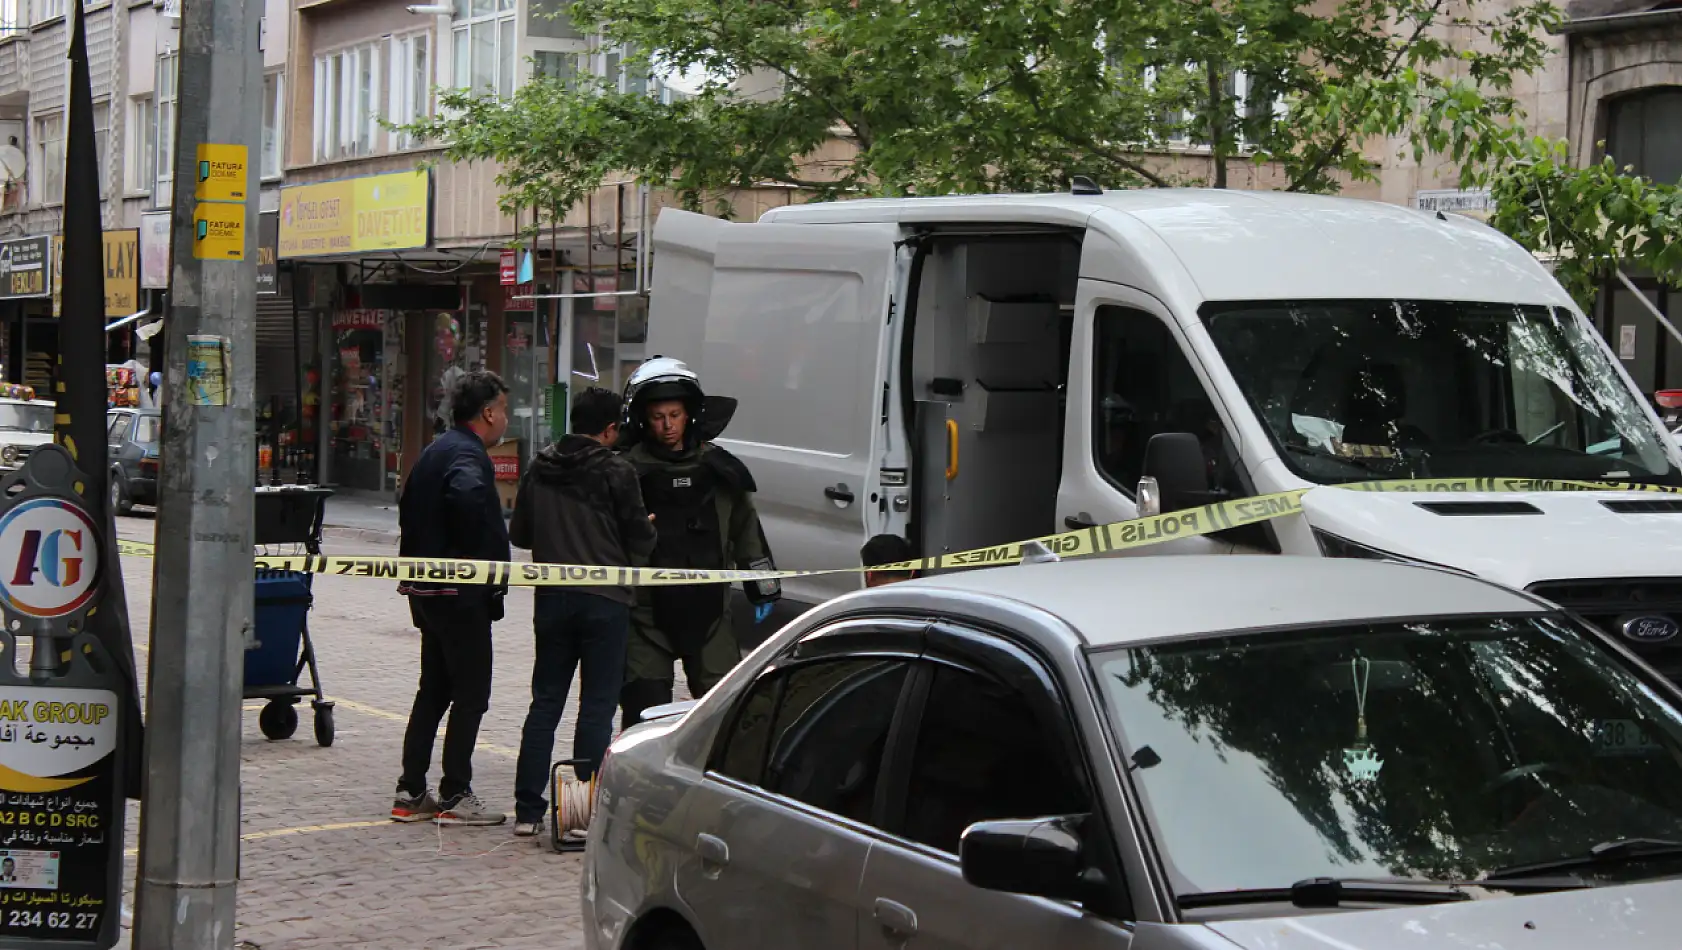 Son Dakika! Kayseri'de şüpheli çanta alarmı: 3 çanta patlatıldı